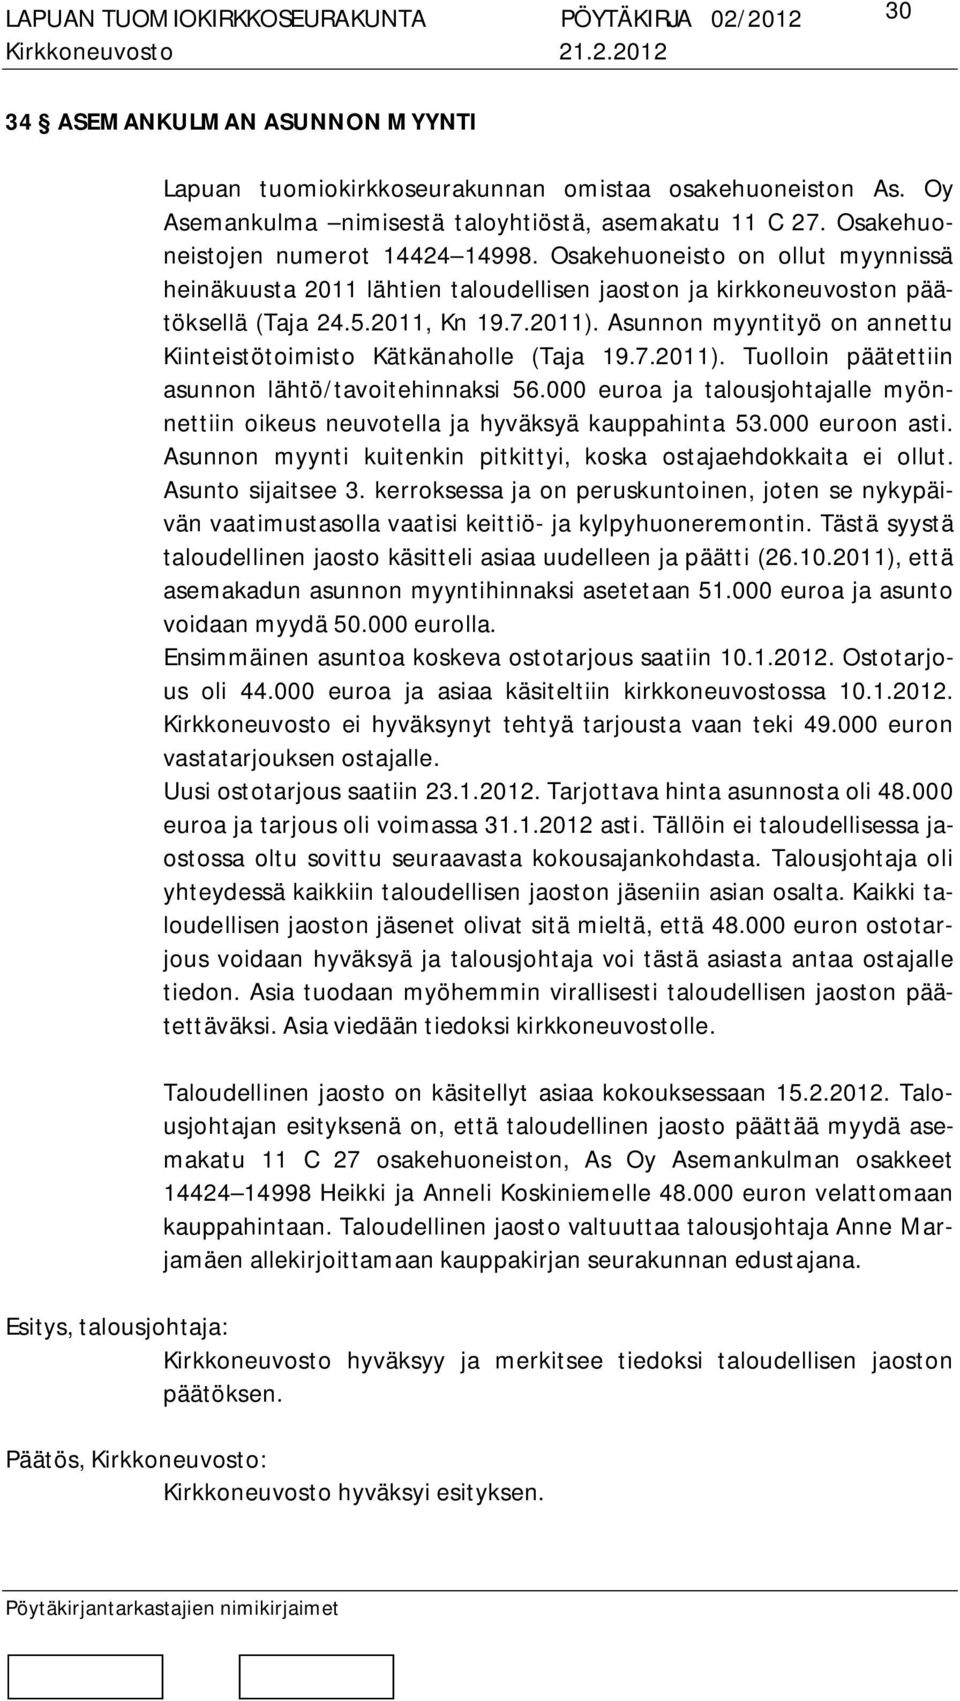 Asunnon myyntityö on annettu Kiinteistötoimisto Kätkänaholle (Taja 19.7.2011). Tuolloin päätettiin asunnon lähtö/tavoitehinnaksi 56.